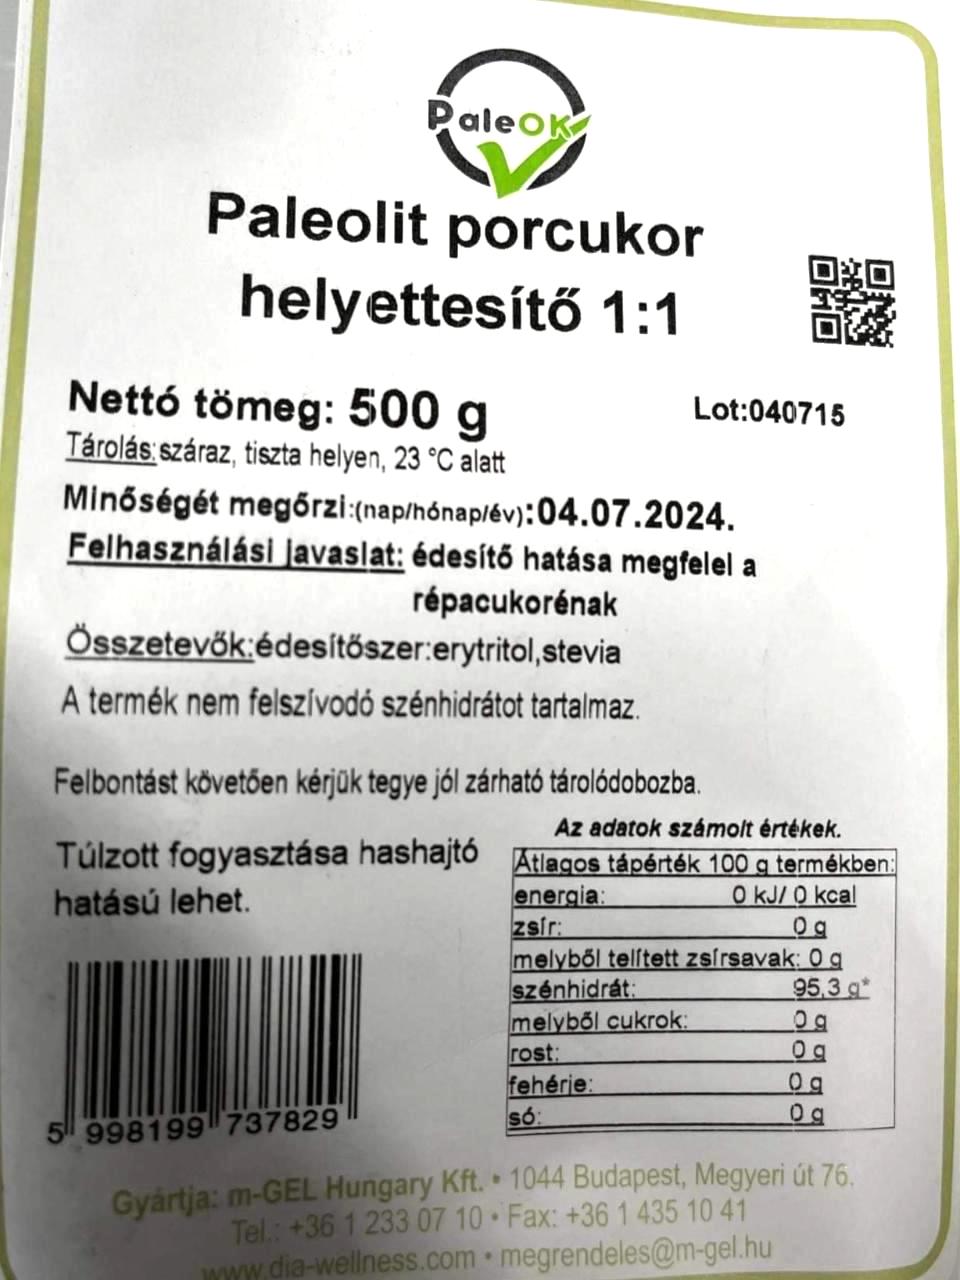 Képek - Paleolit porcukor helyettesítő 1:1 PaleOk